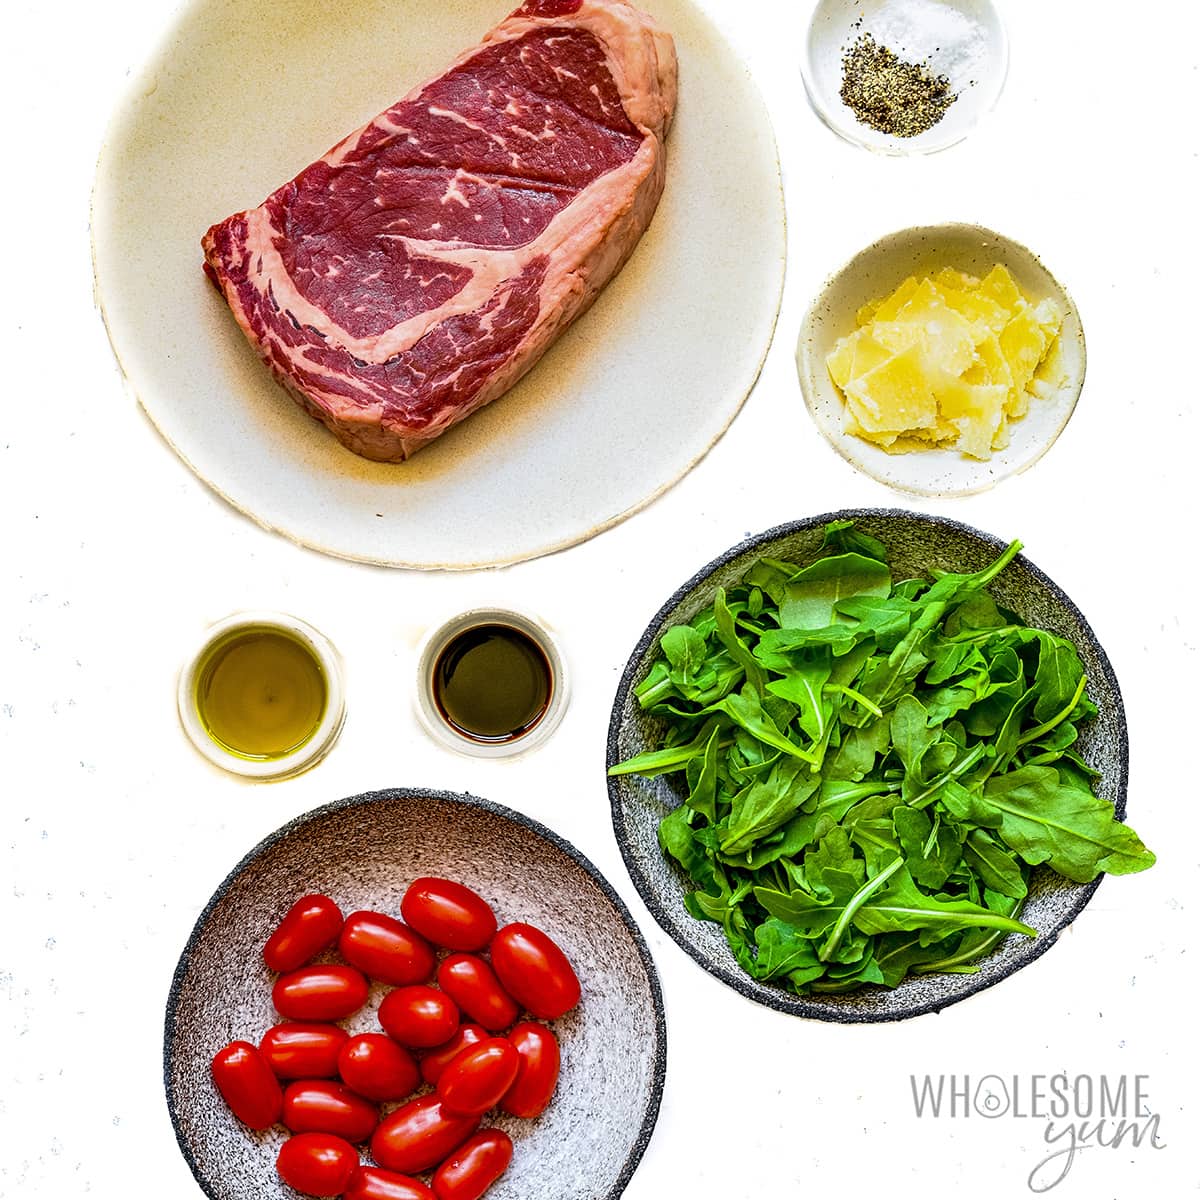 Steak salad ingredients.